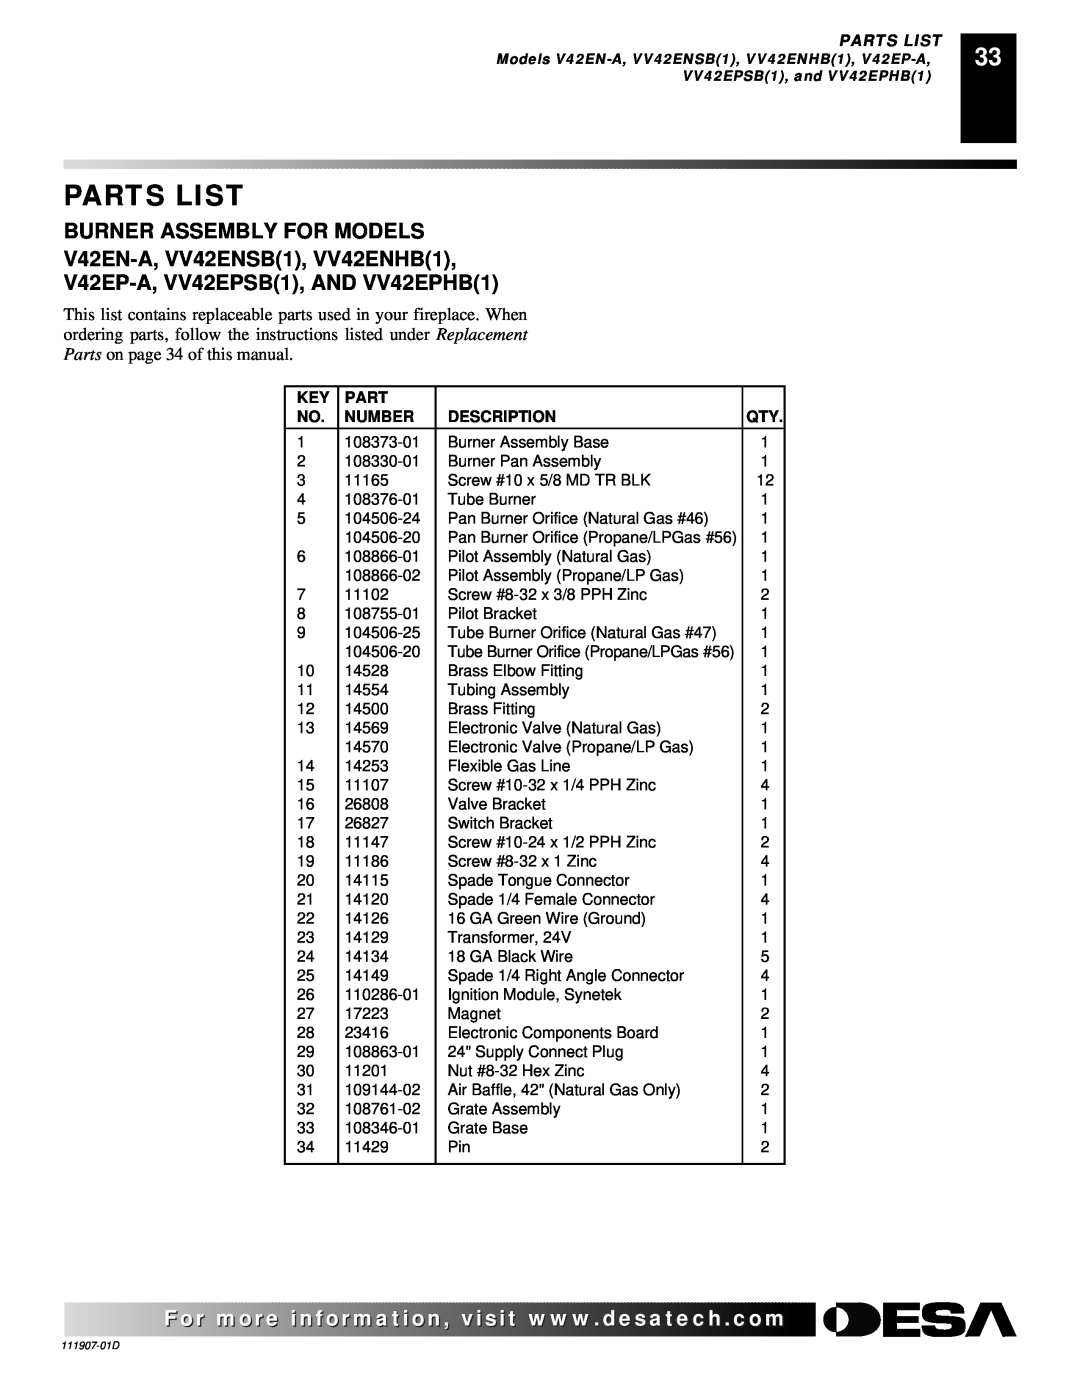 Desa VV42EPB(1) Parts List, Burner Assembly For Models, V42EN-A,VV42ENSB1, VV42ENHB1, V42EP-A,VV42EPSB1, AND VV42EPHB1 